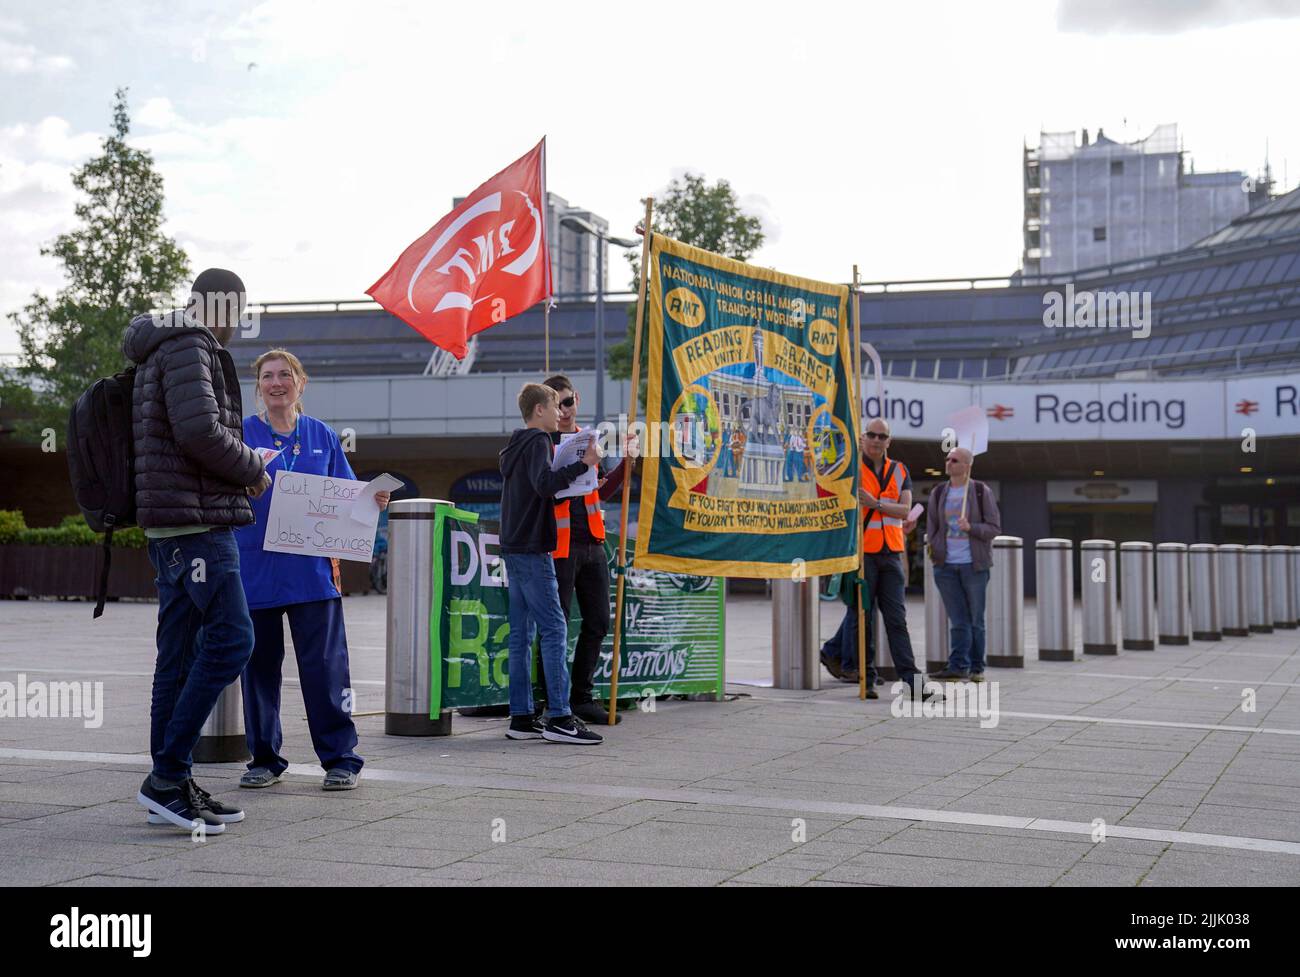 Les membres du syndicat des chemins de fer, des Maritimes et des Transports (RMT) sur la ligne de piquetage à l'extérieur de la gare de Reading, en tant que membres du syndicat, participent à une nouvelle grève sur les emplois, les salaires et les conditions. Date de la photo: Mercredi 27 juillet 2022. Banque D'Images